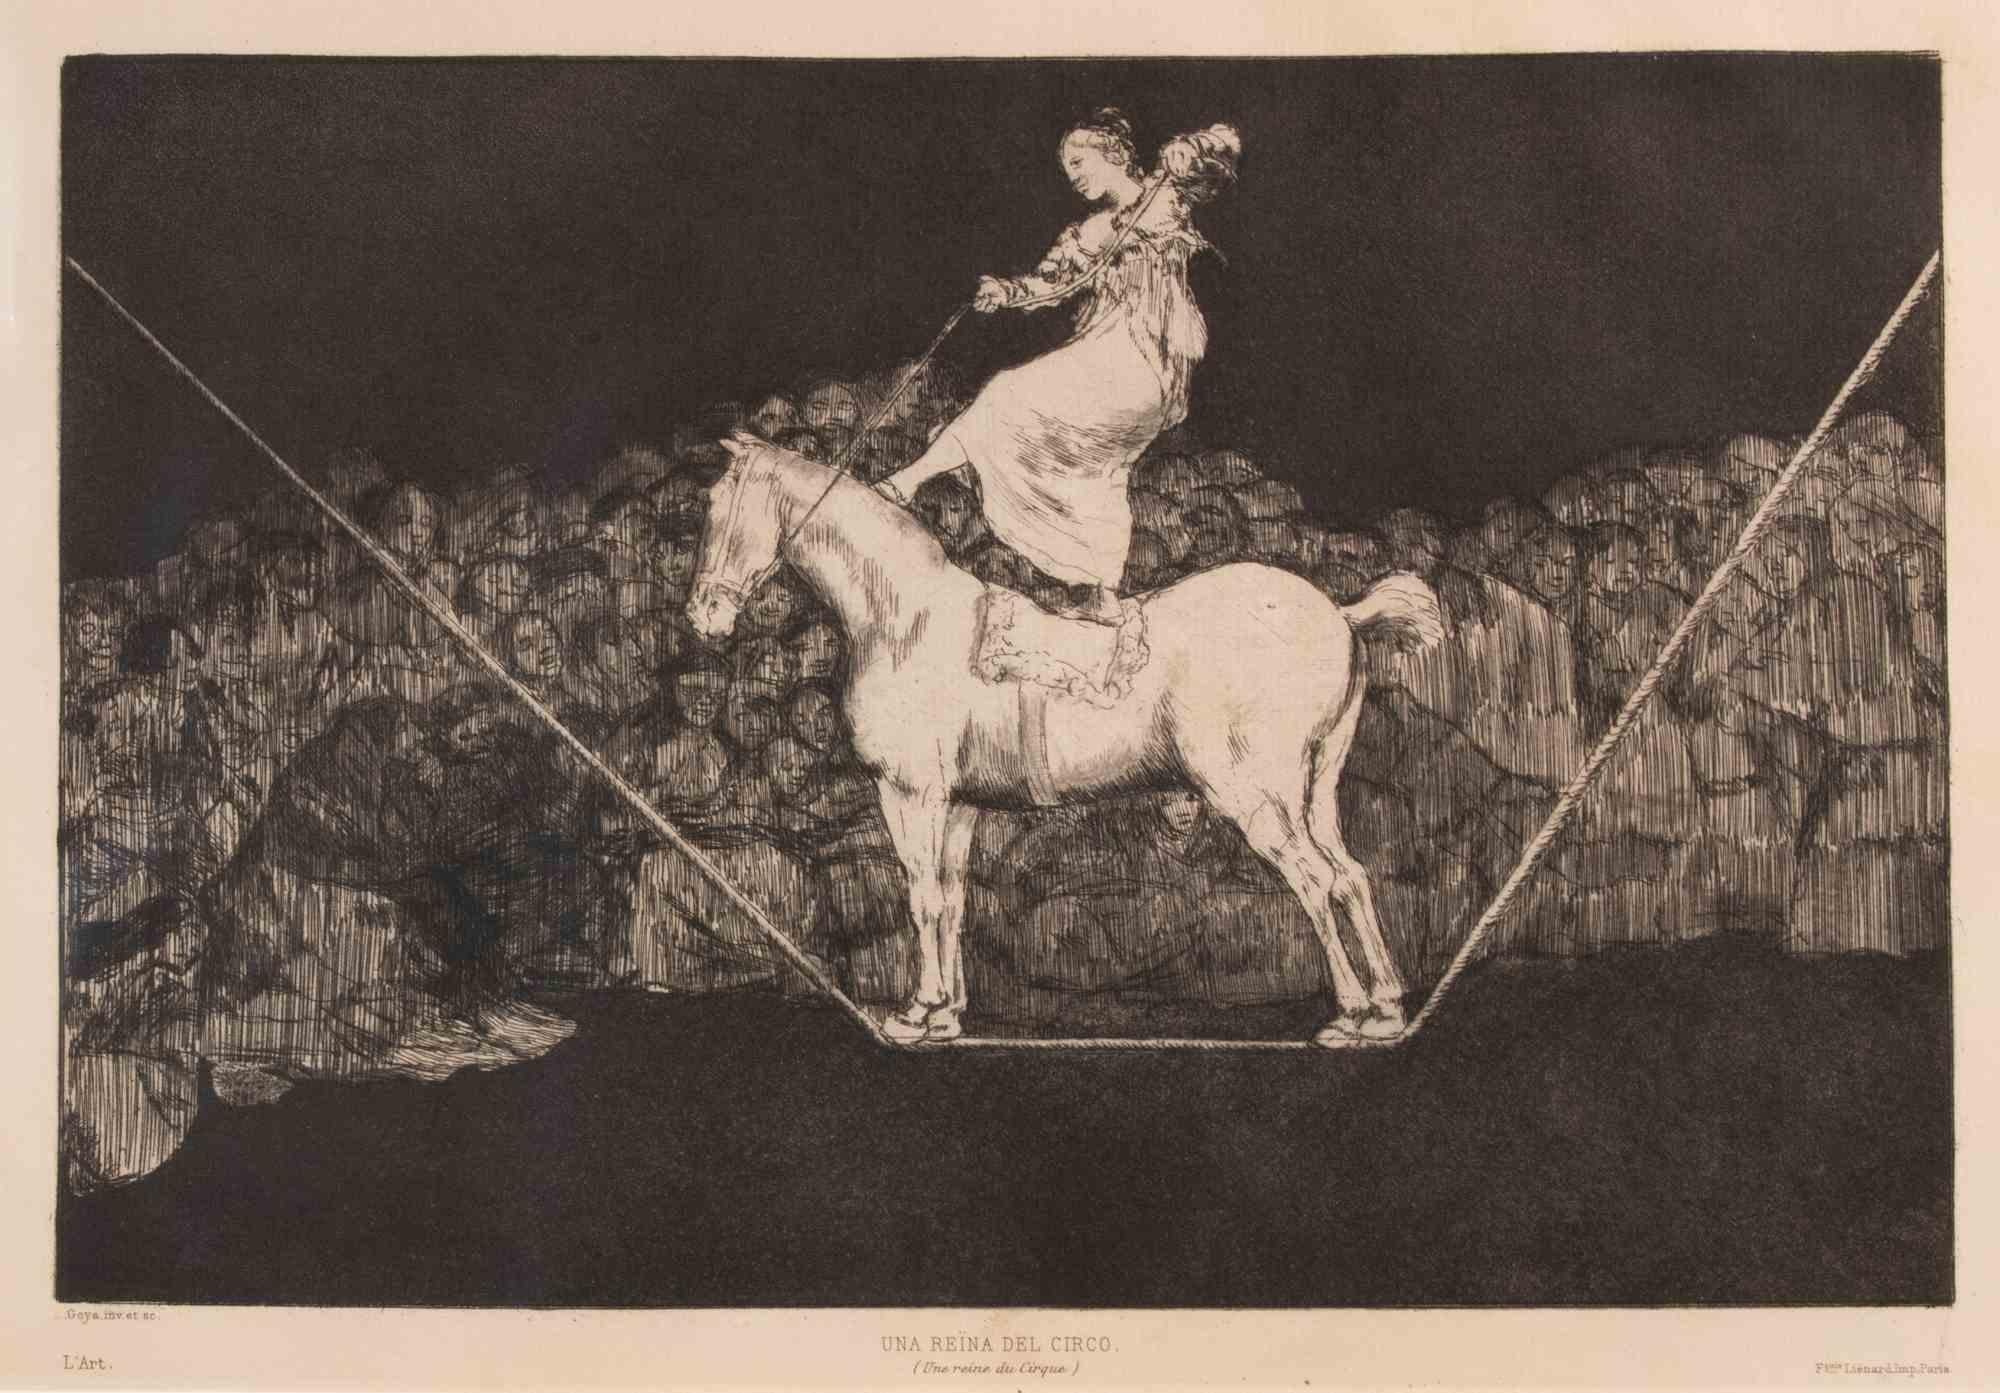 Una Reina del Circo ist ein modernes Kunstwerk, das von Francisco Goya geschaffen wurde.

Radierung und Aquatinta, aus der Serie "Los Proverbios", entstanden 1815.

Dieses Exemplar gehört zur Ausgabe von "L'Art", die 1877 veröffentlicht wurde.

Sehr